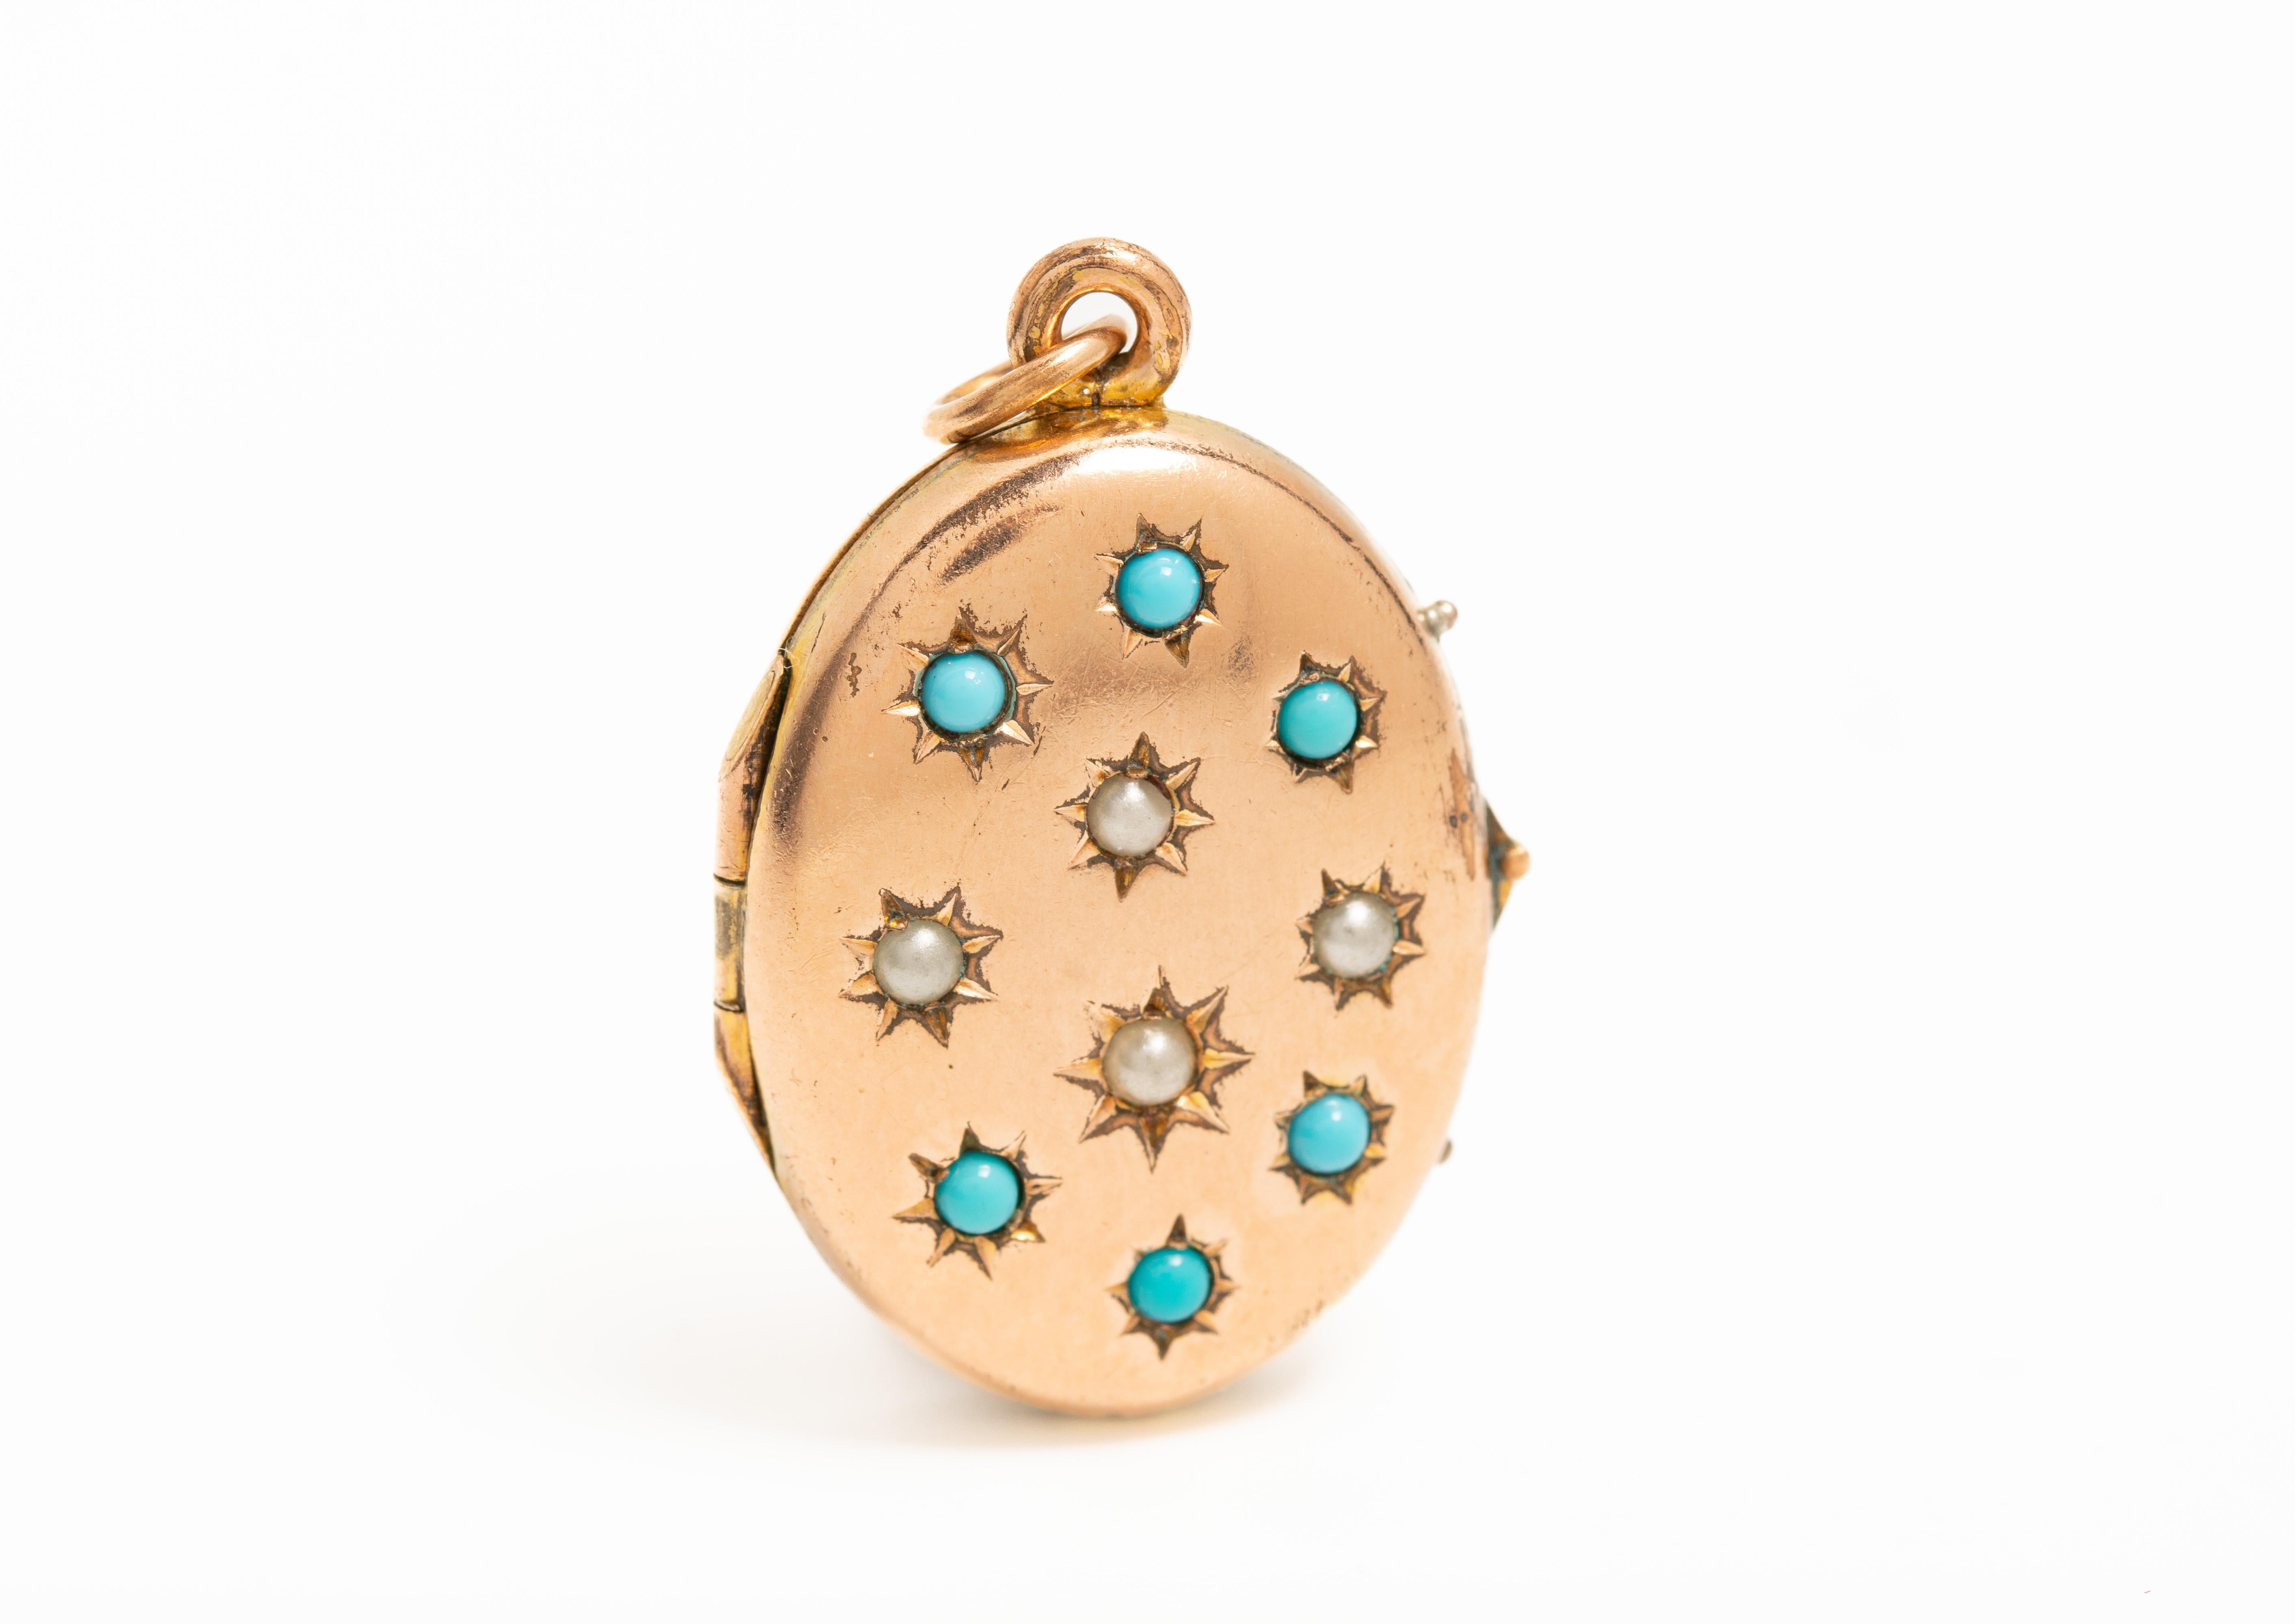 Ce magnifique médaillon victorien en or 9ct est délicatement orné d'une turquoise naturelle et de délicates perles de rocaille en forme d'étoile. Le médaillon s'ouvre pour révéler deux compartiments pour les photographies.

POIDS : 3,8